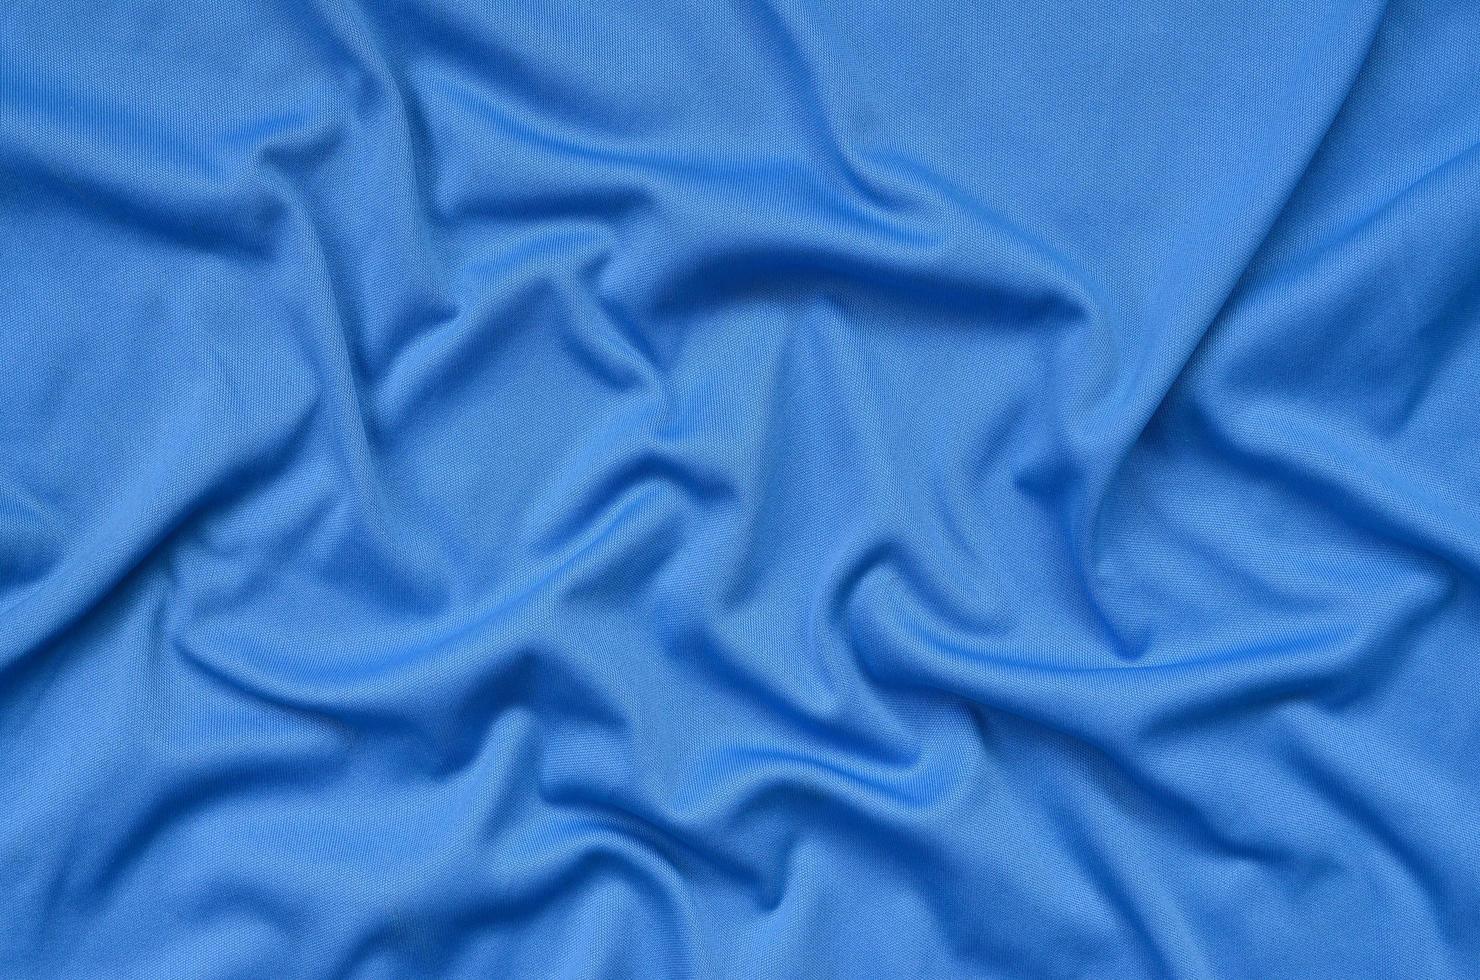 detaillierte Polyester-blaue Stoffstruktur mit vielen Falten foto